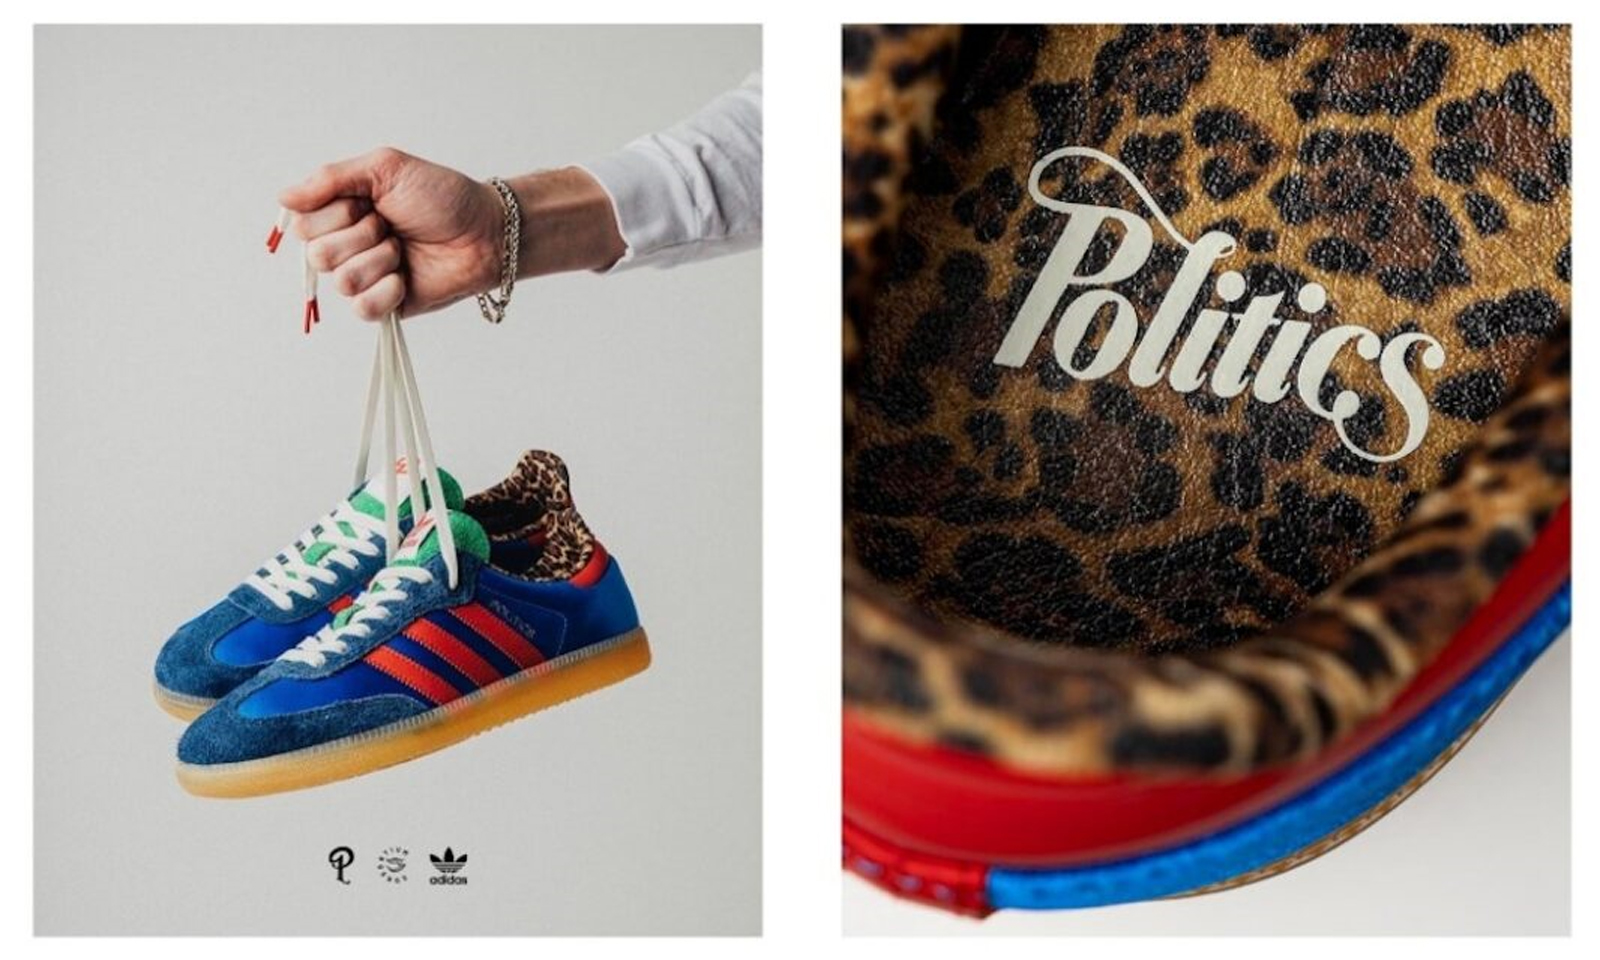 Sneaker Politics x adidas Originals Samba「Consortium Cup」即将发售